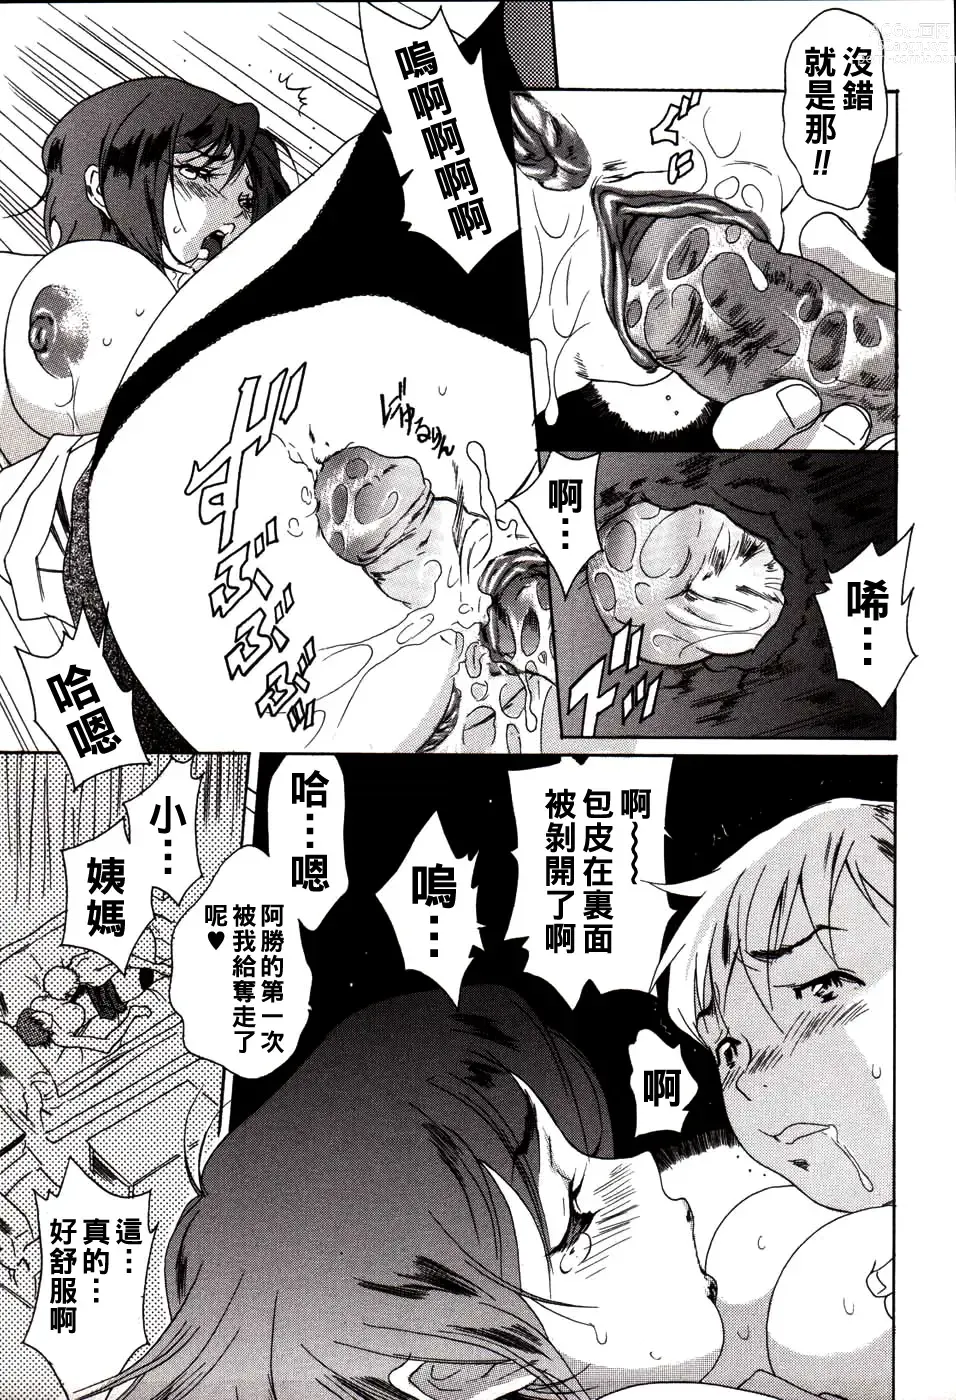 Page 9 of manga Kareshi no Jijou